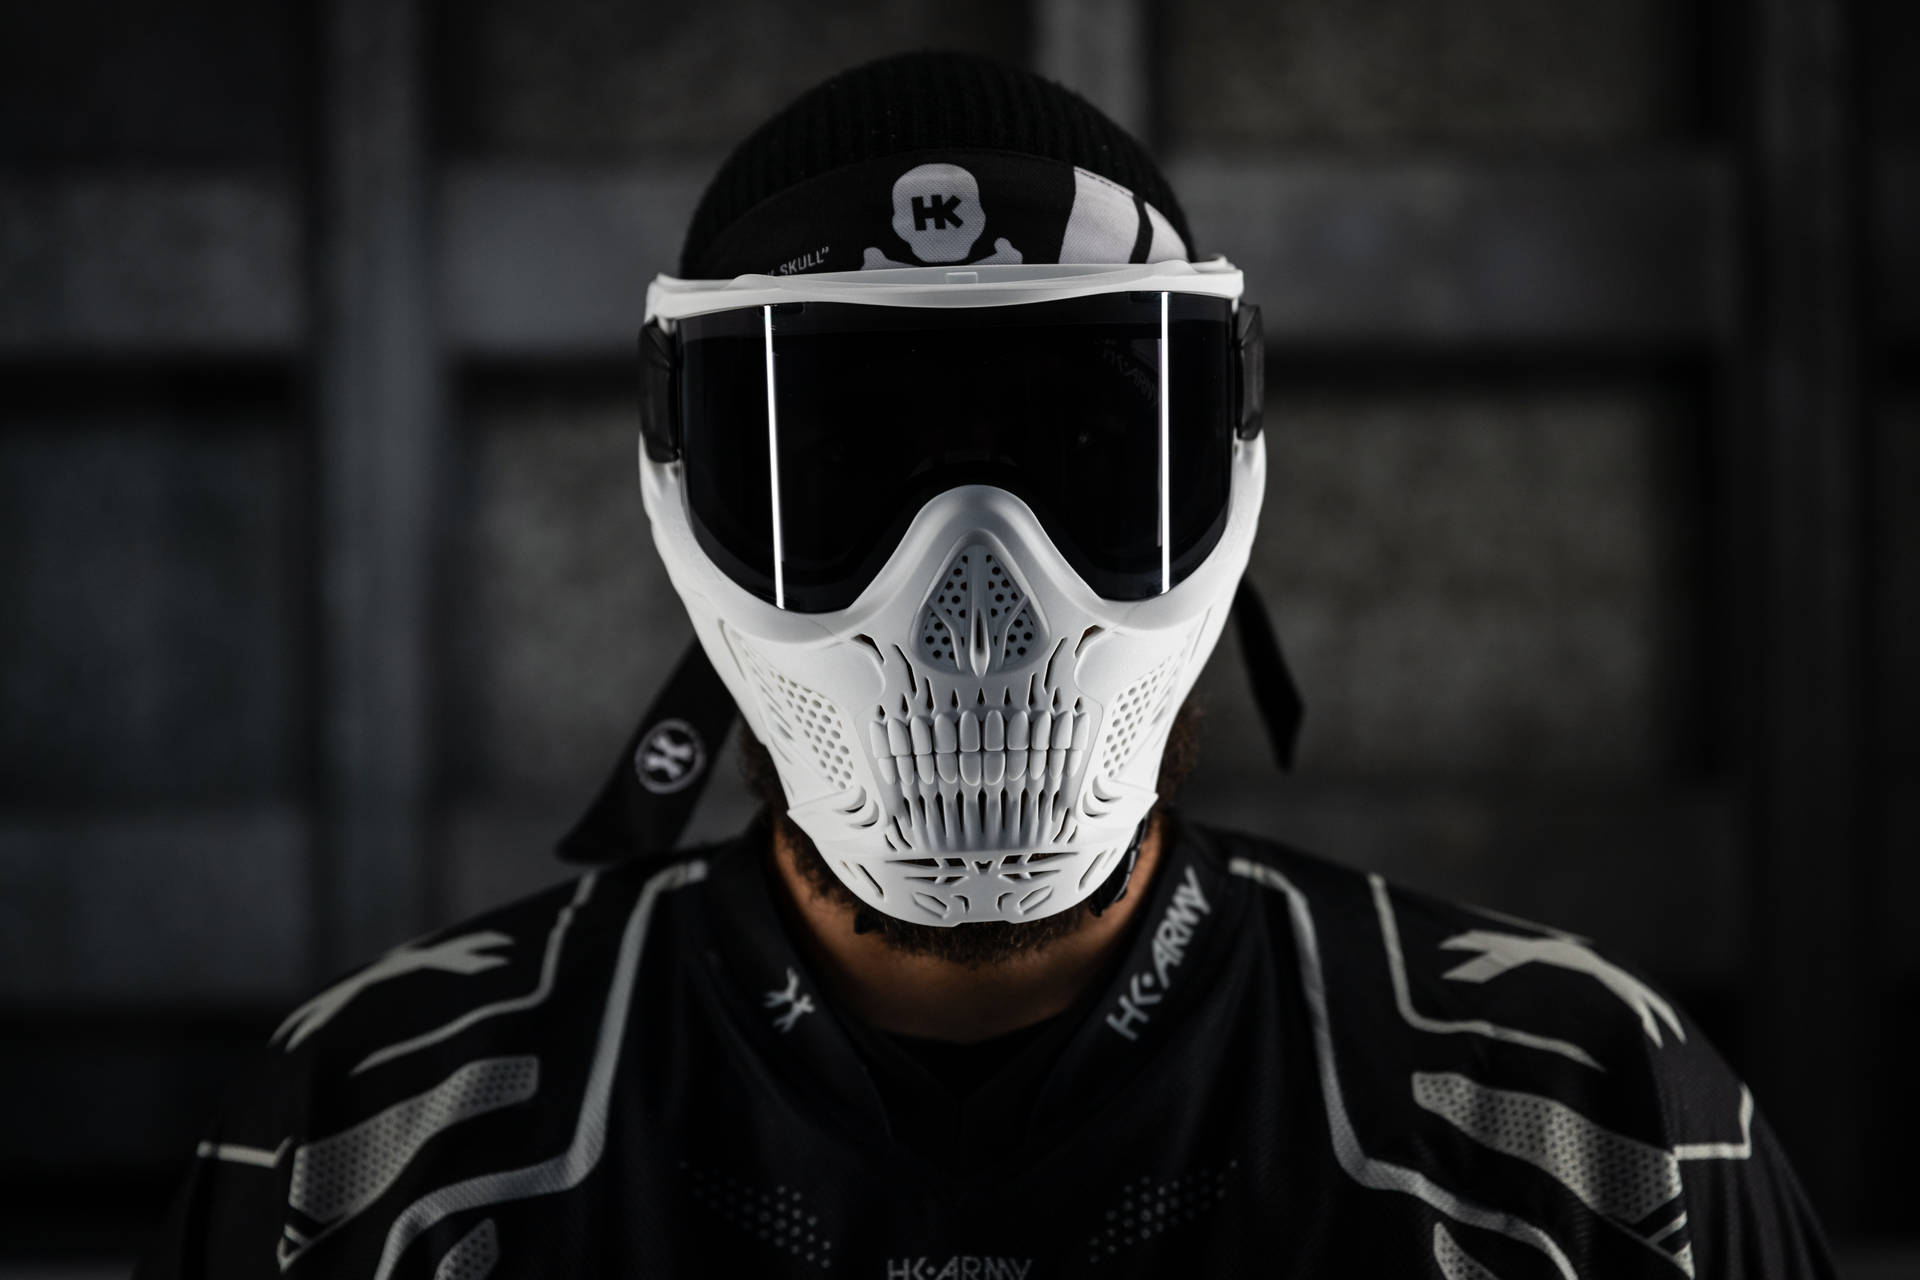 Scary Skull Design On Helmet